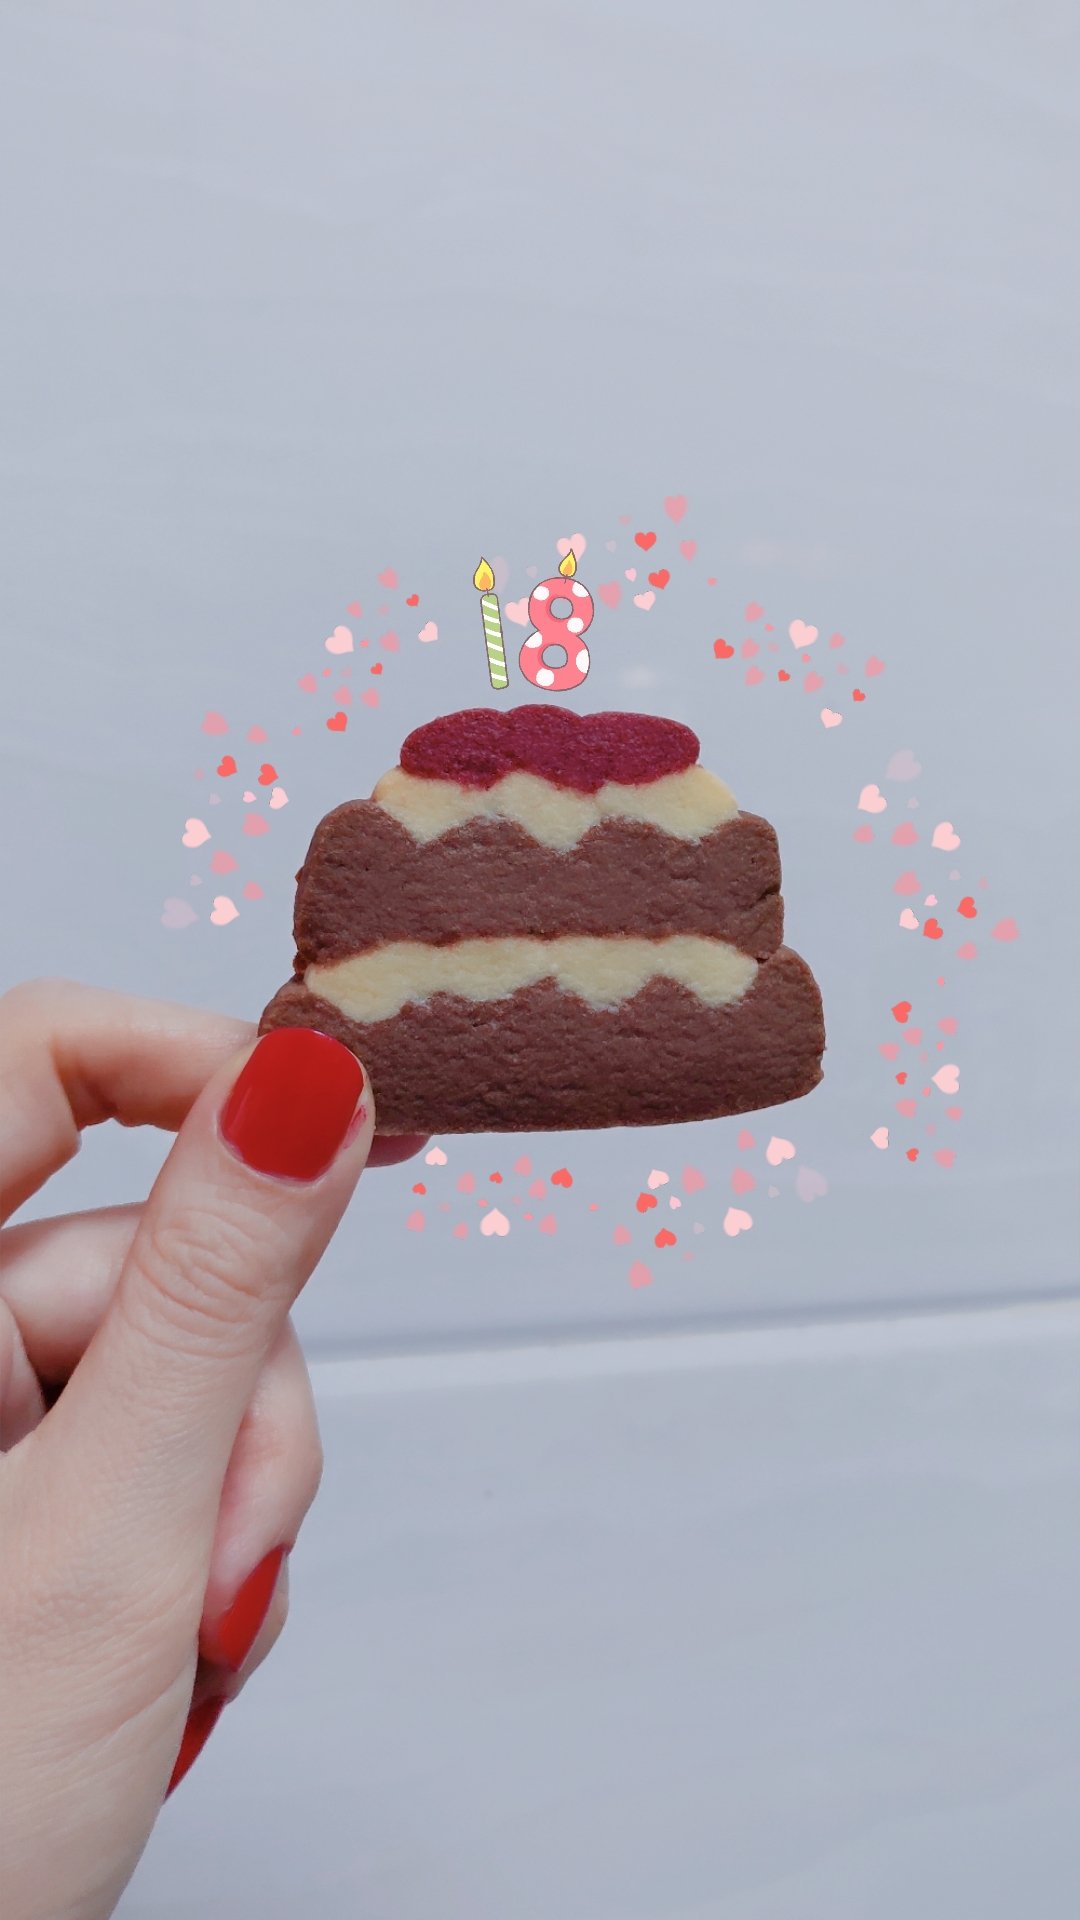 新手小白的双层蛋糕饼干～～🎂生日送礼超有面👍